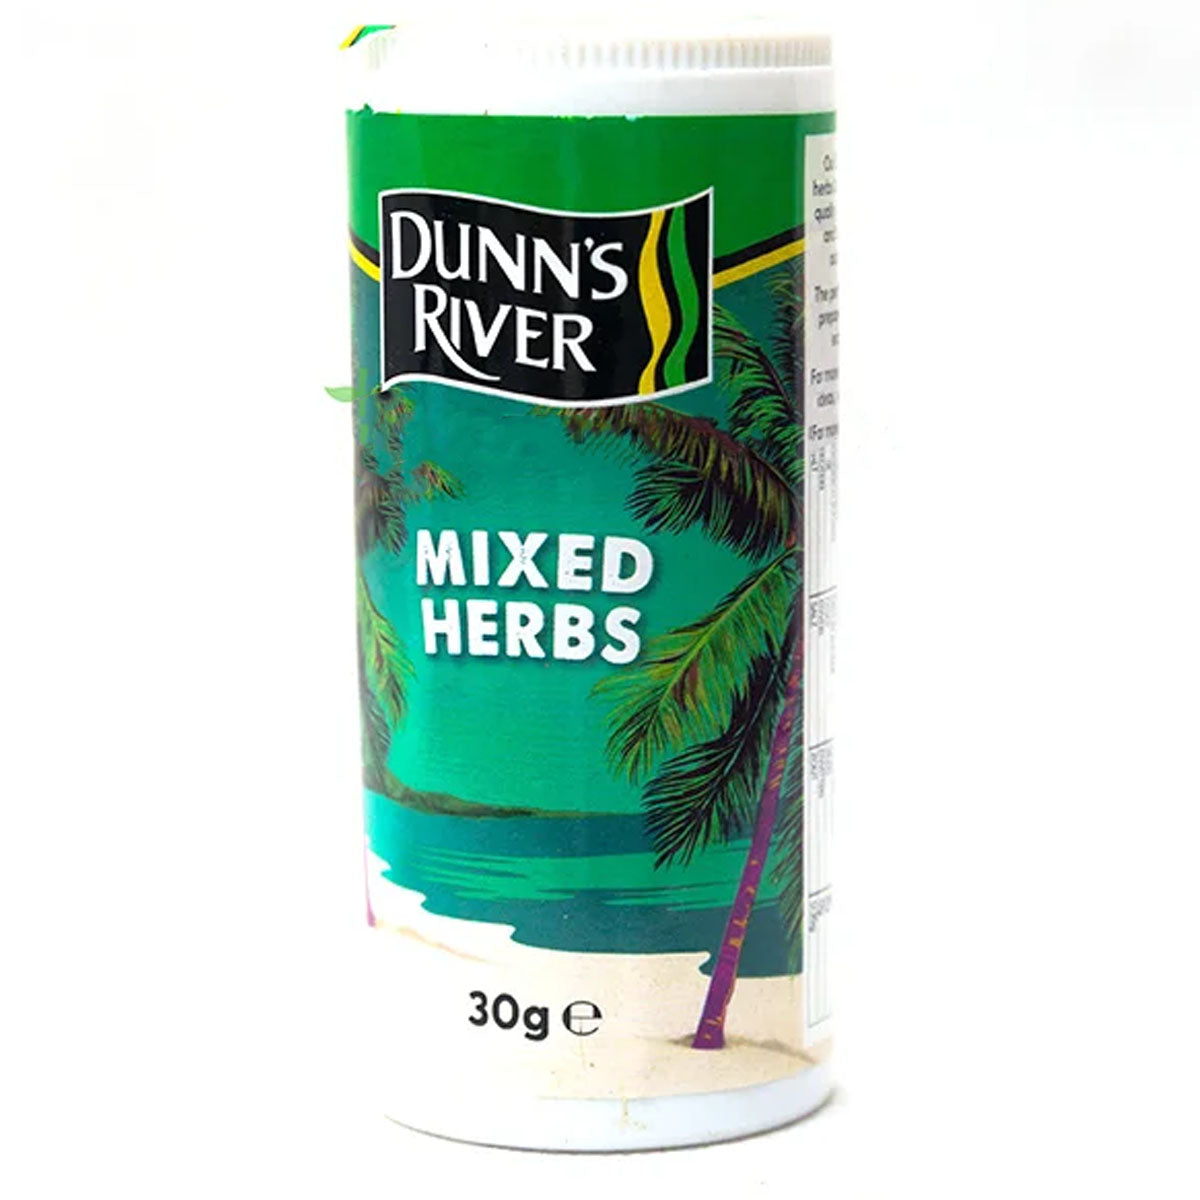 Dunn's River - Mixed Herbs - 30g.